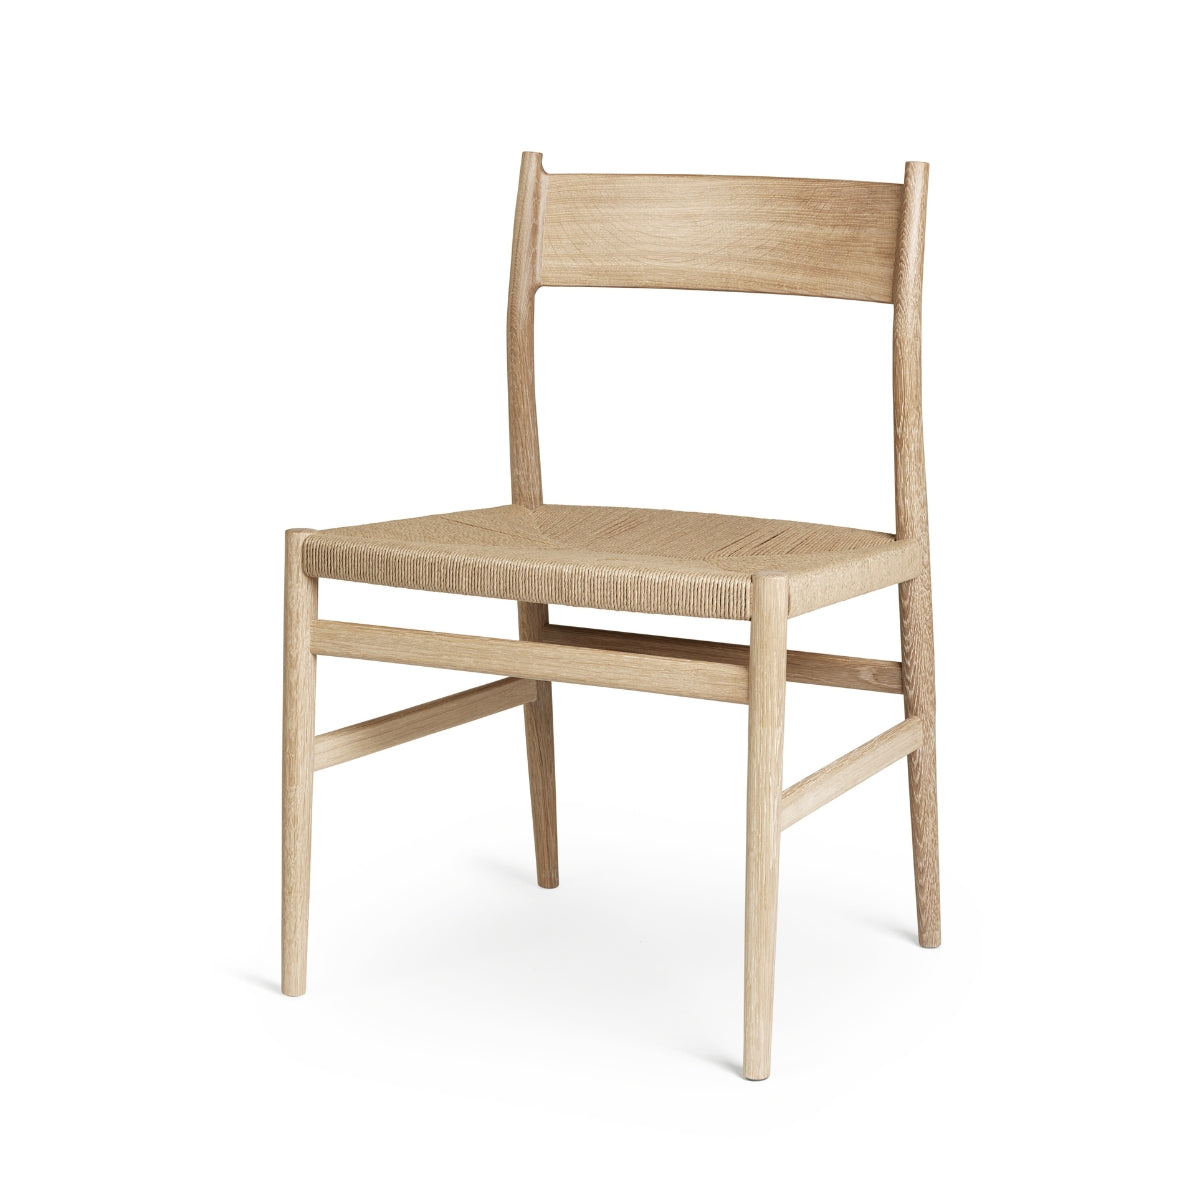 Brdr. Krüger | Arv Chair Without Armrest, Solid Backrest - Weaved Seat